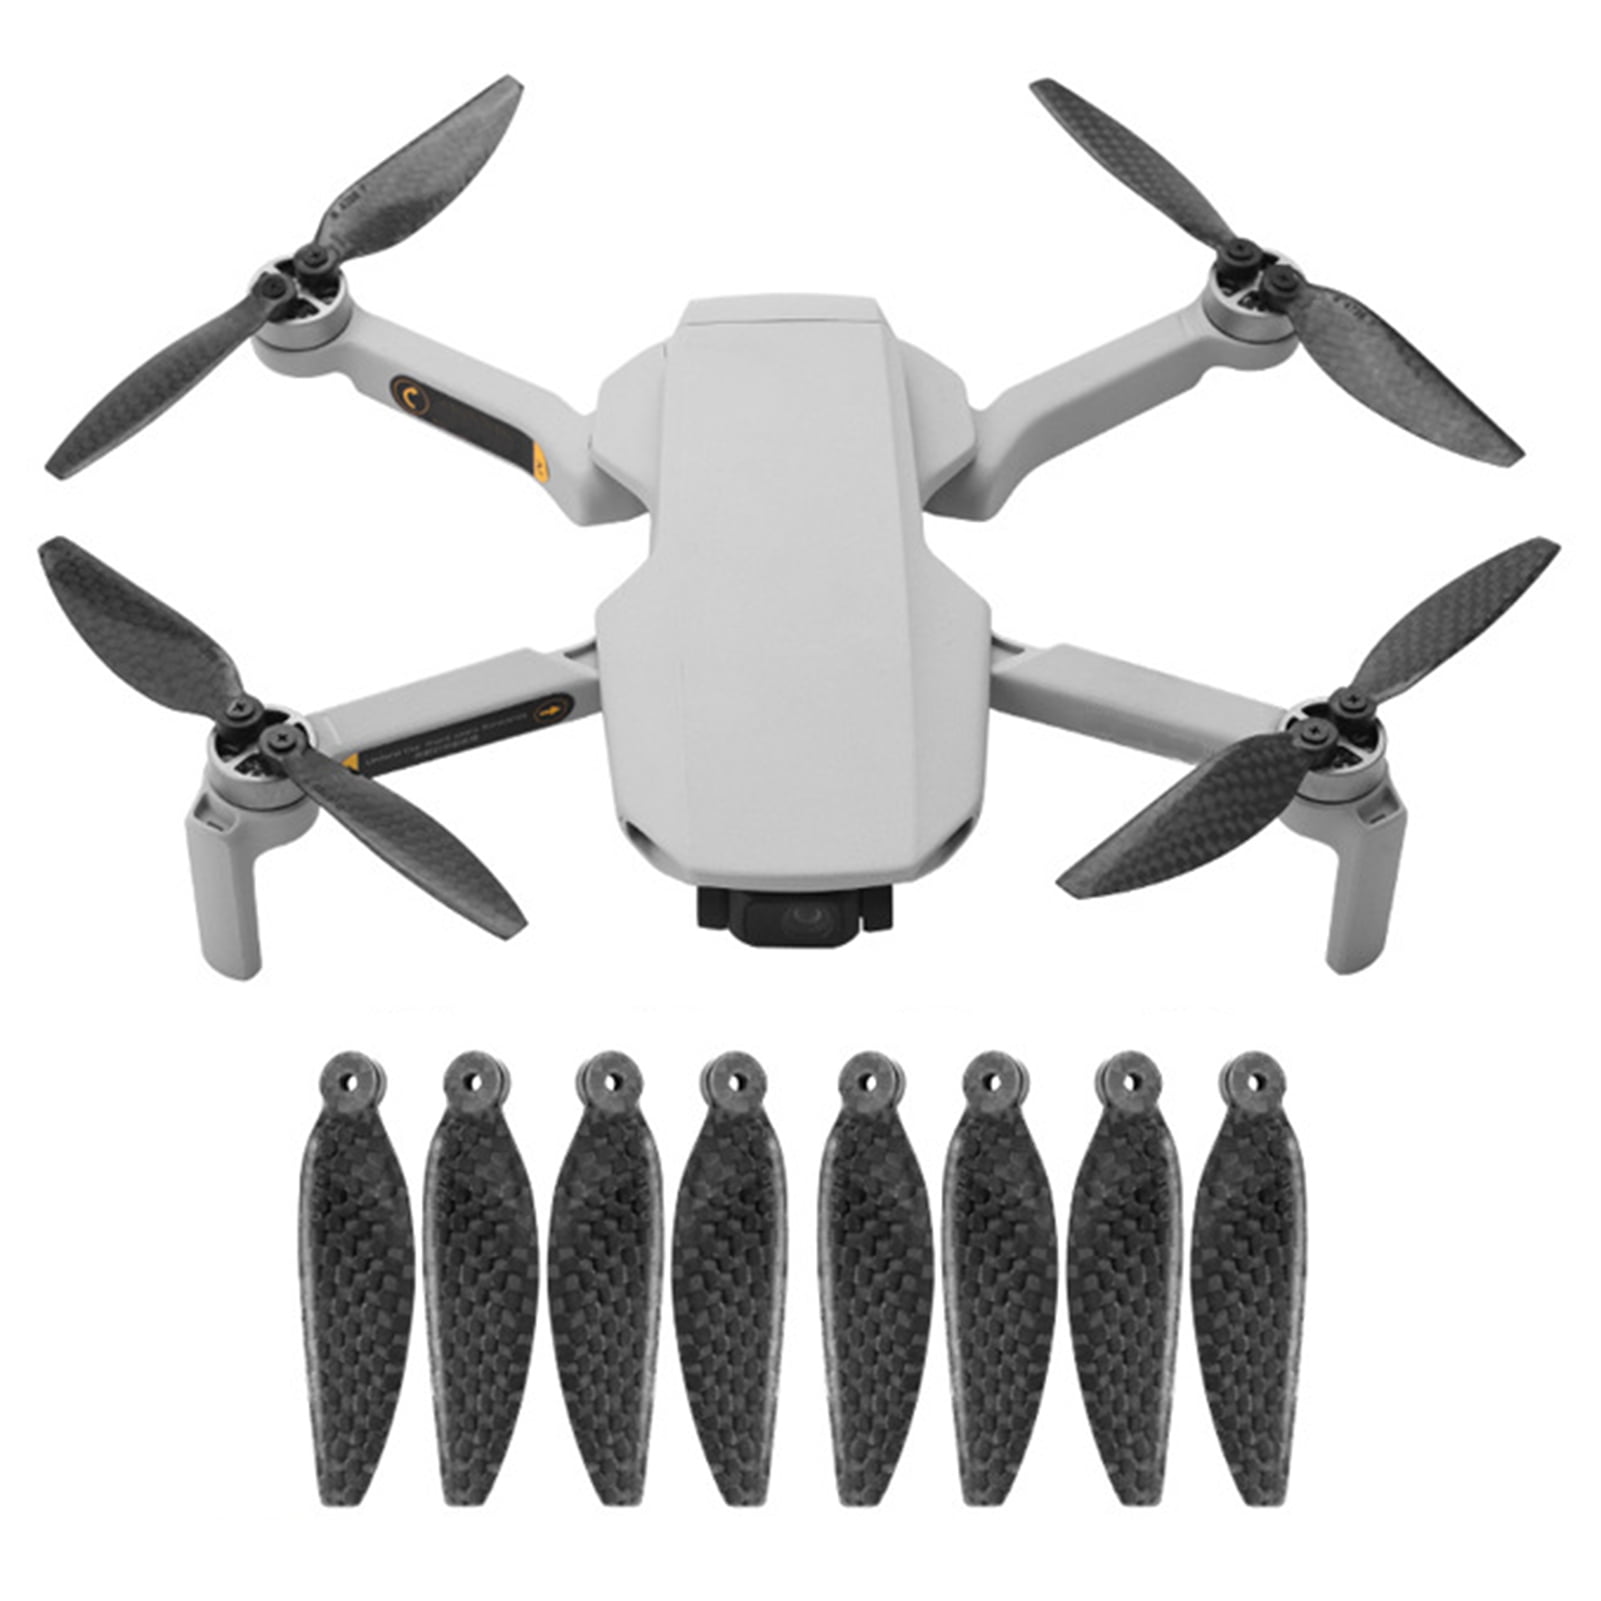 8x Quick Release Carbon-Fiber Propellers for DJI Mavic Mini RC UAV Quadcopters